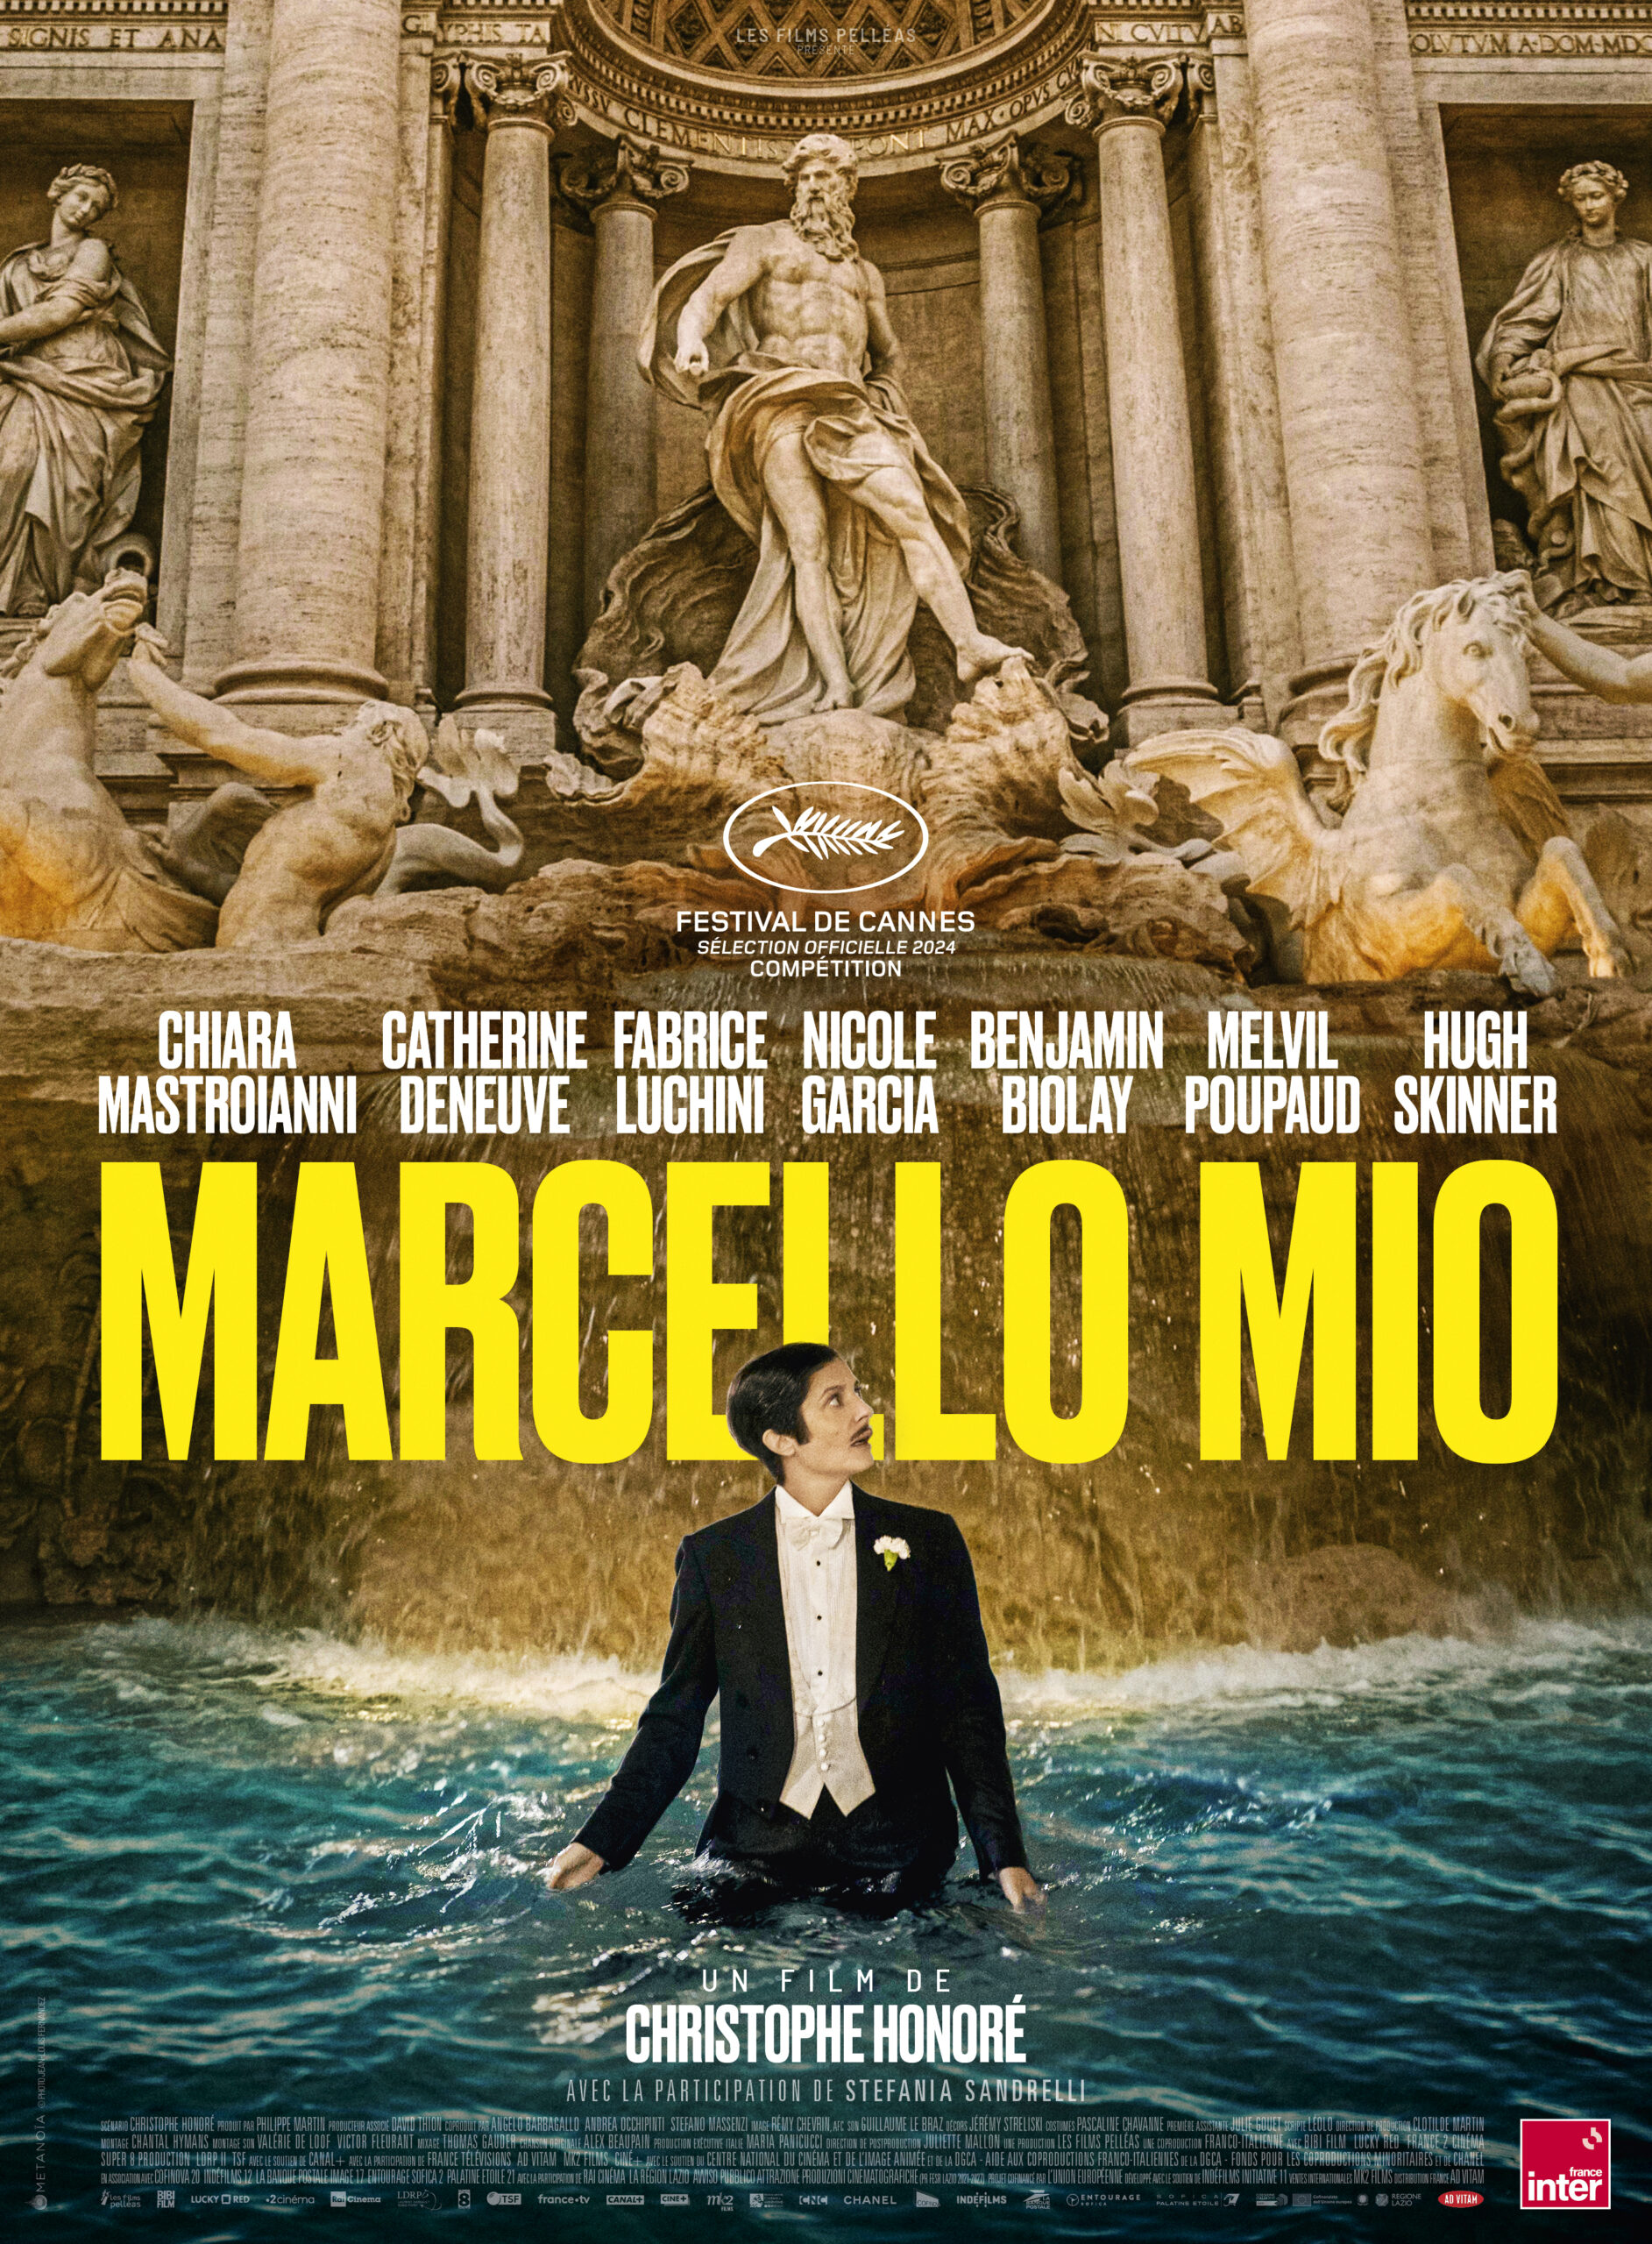 La locandina ufficiale di Marcello Mio, film di Christophe Honoré presentato a Cannes77